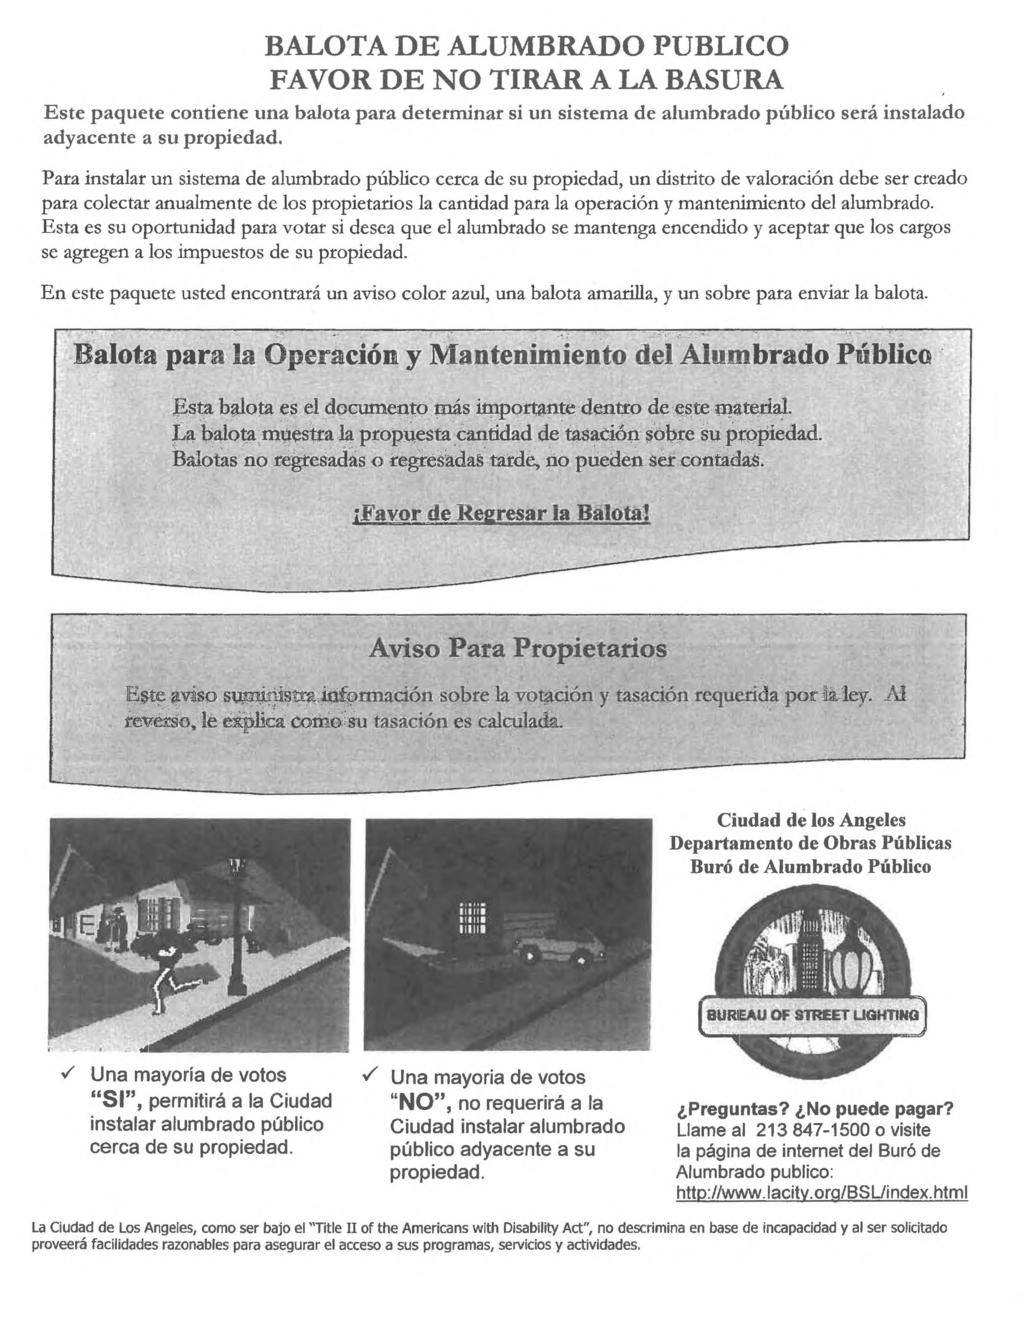 BALOTA DE ALUMBRADO PUBLICO FAVOR DE NO TIRAR A LA BASURA Este paquete contiene una balota para determinar si un sistema de alumbrado publico sera instalado adyacente a su propiedad.